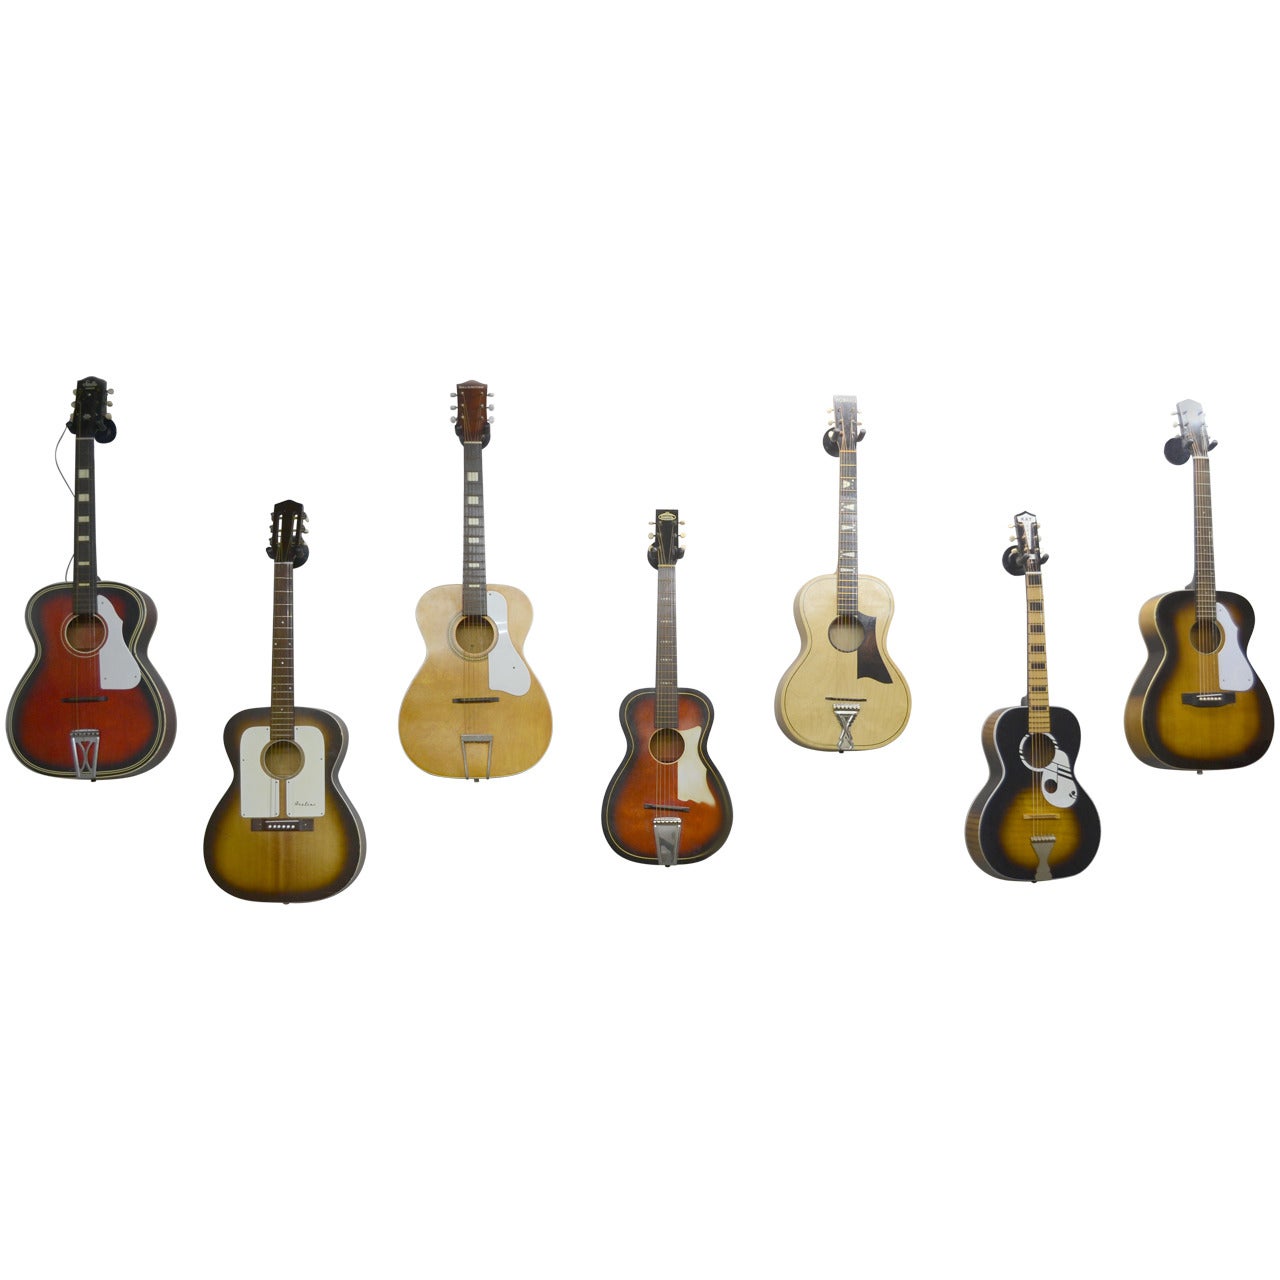 Vintage Parlor Acoustic Guitar Collection